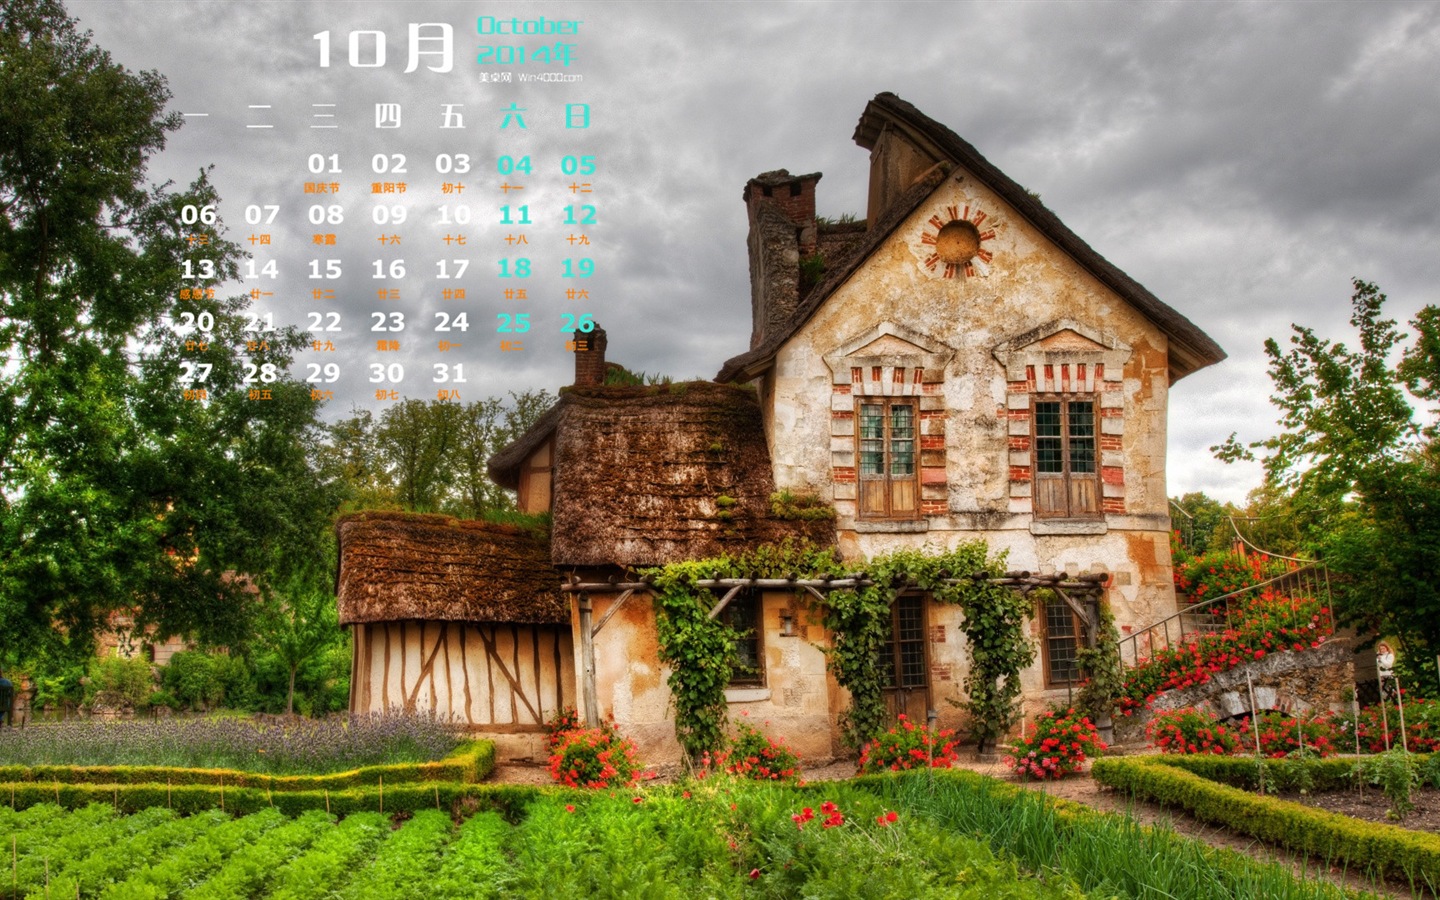 10 2014 wallpaper Calendario (1) #11 - 1440x900